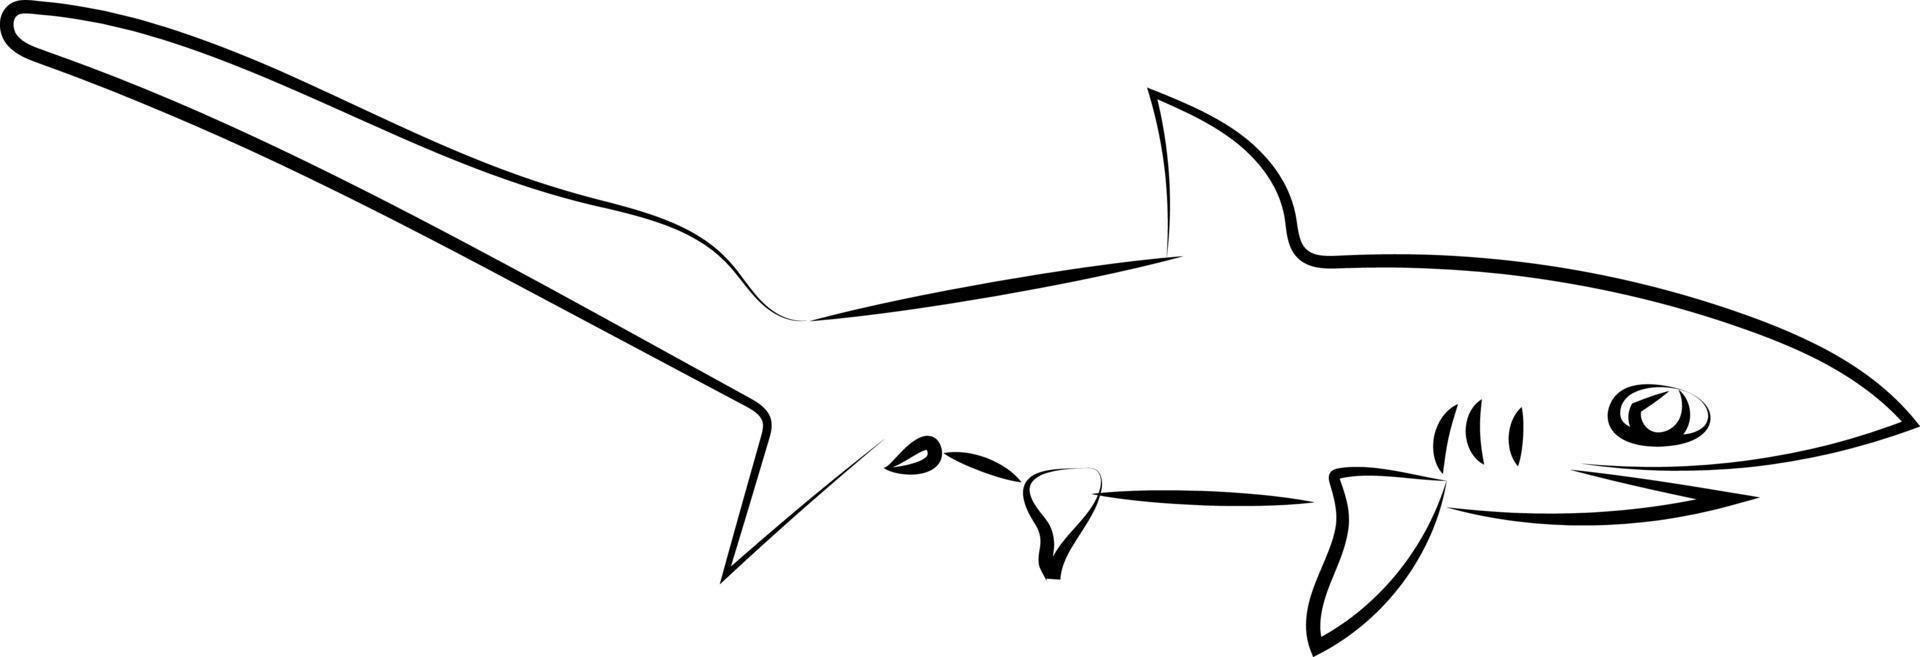 haj teckning, illustration, vektor på vit bakgrund.